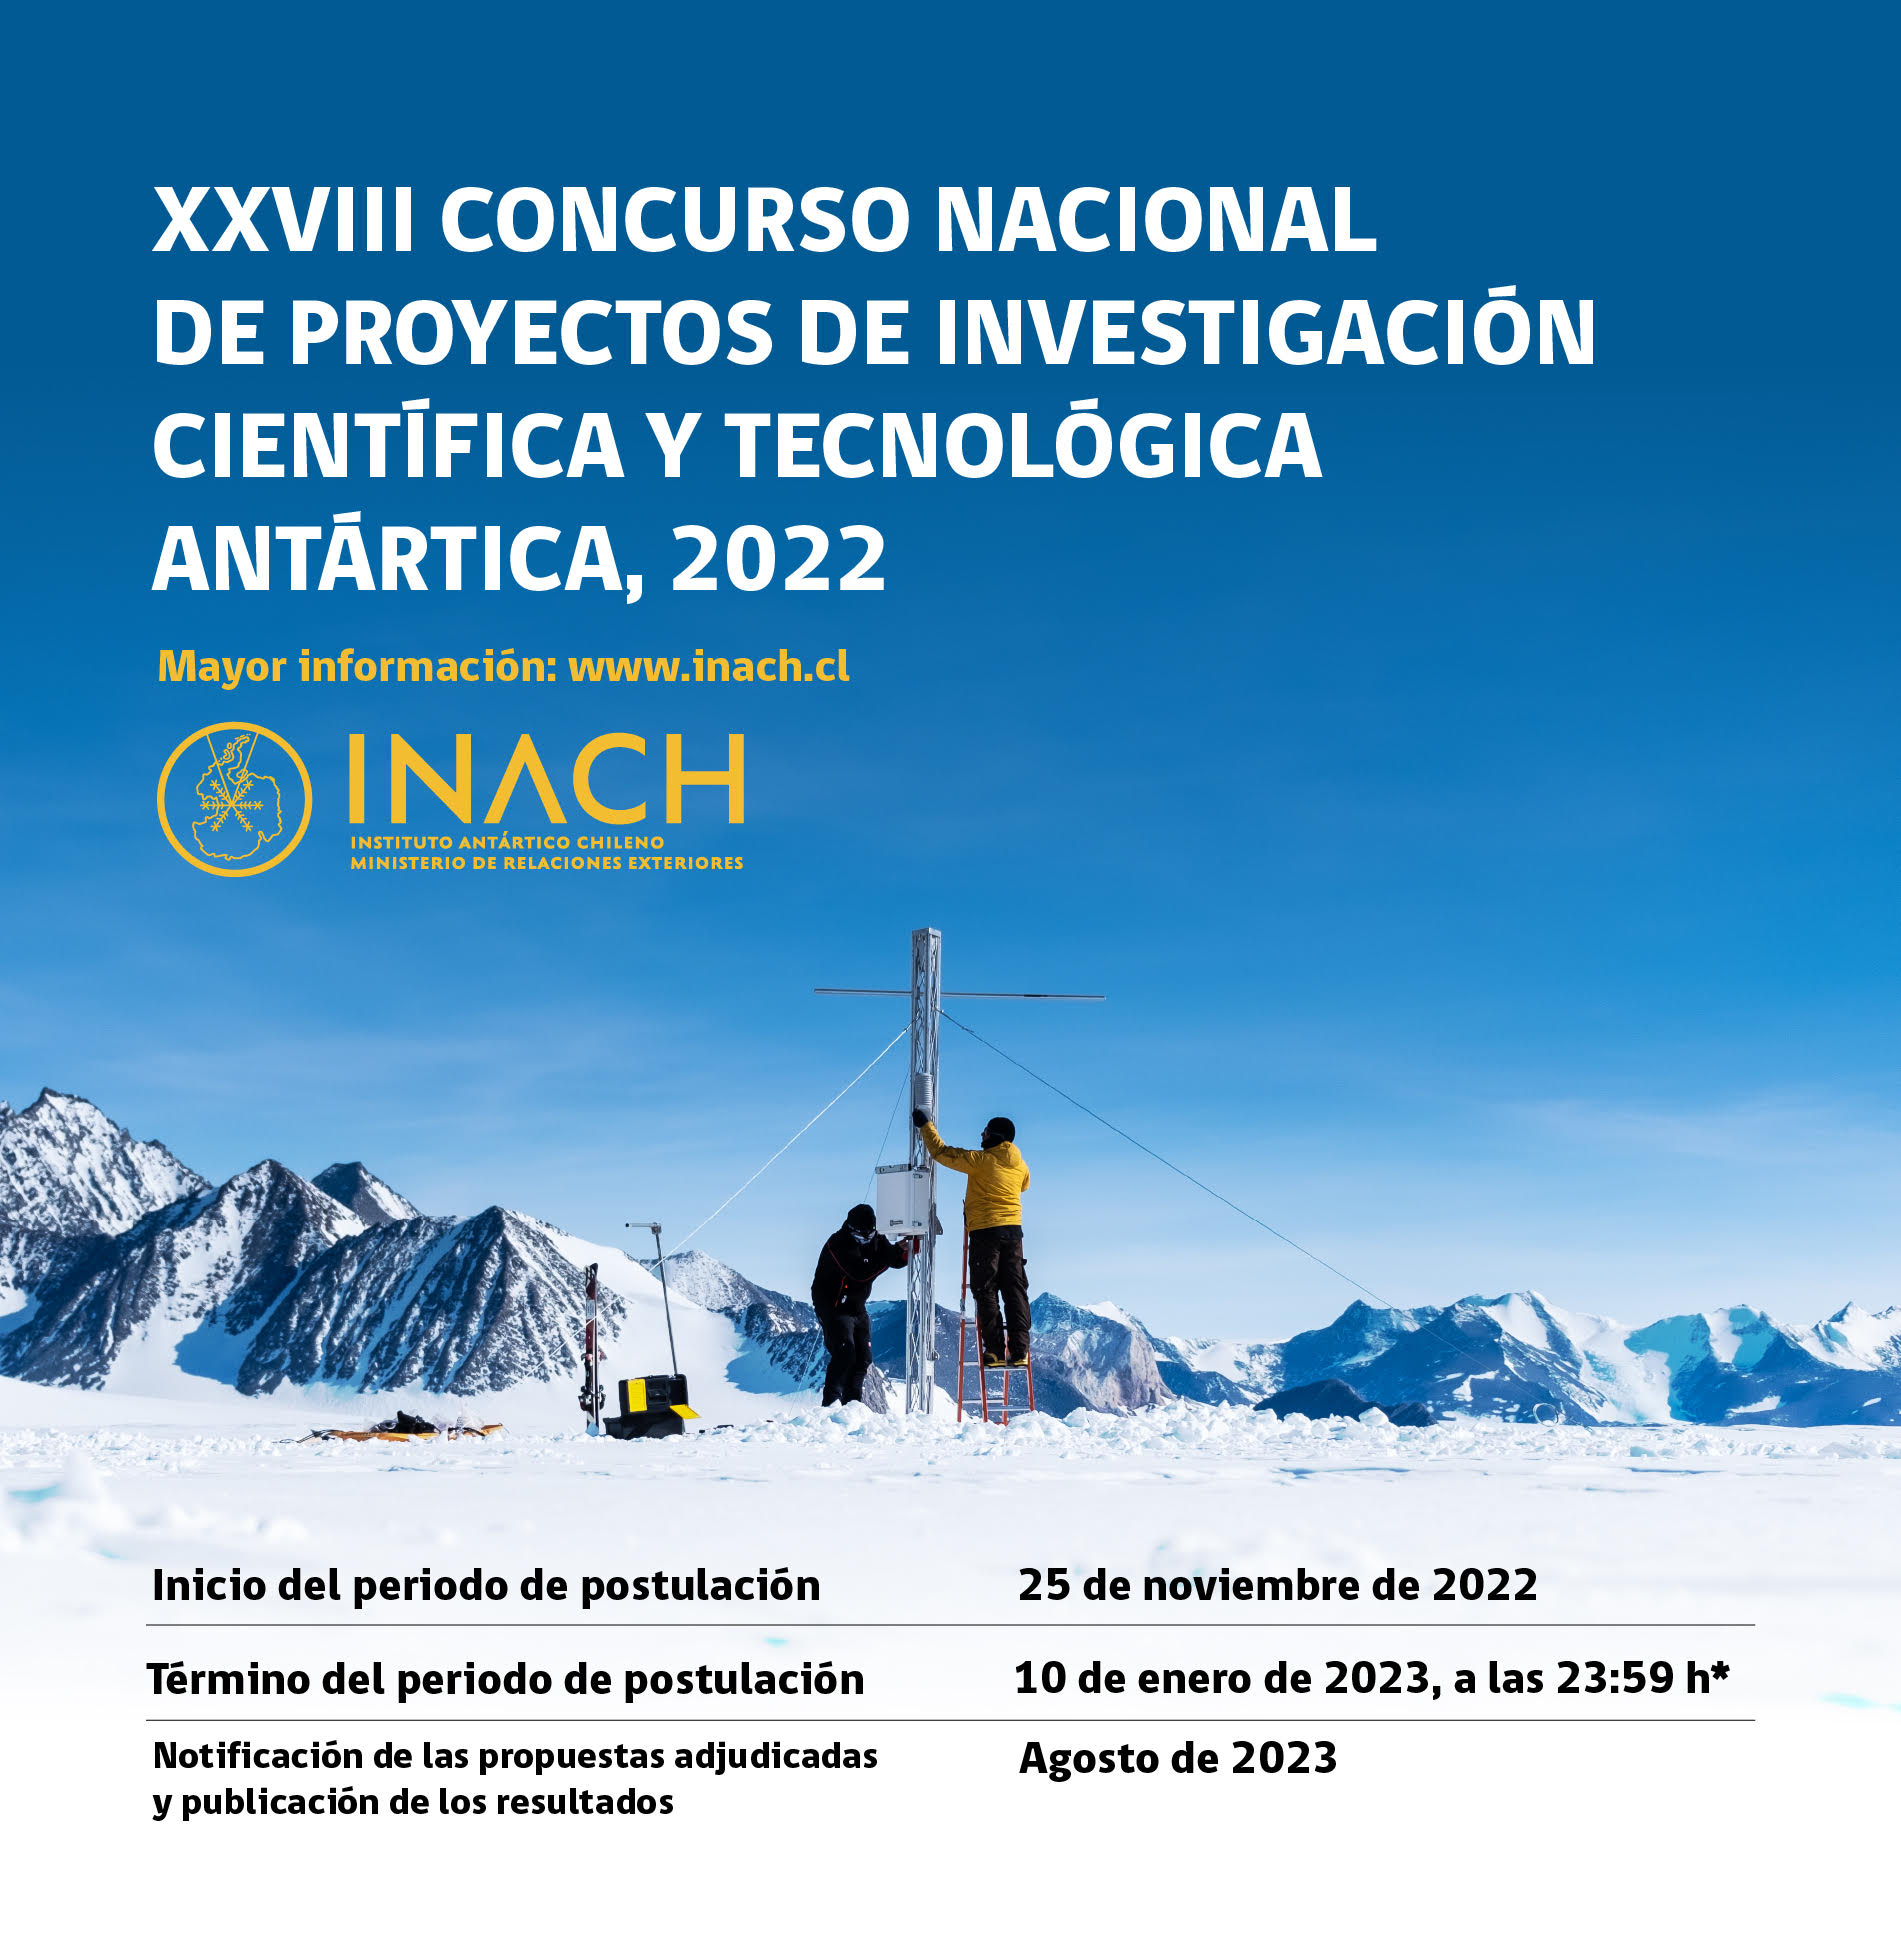 INACH abre concurso nacional para proyectos de investigación antártica 2022